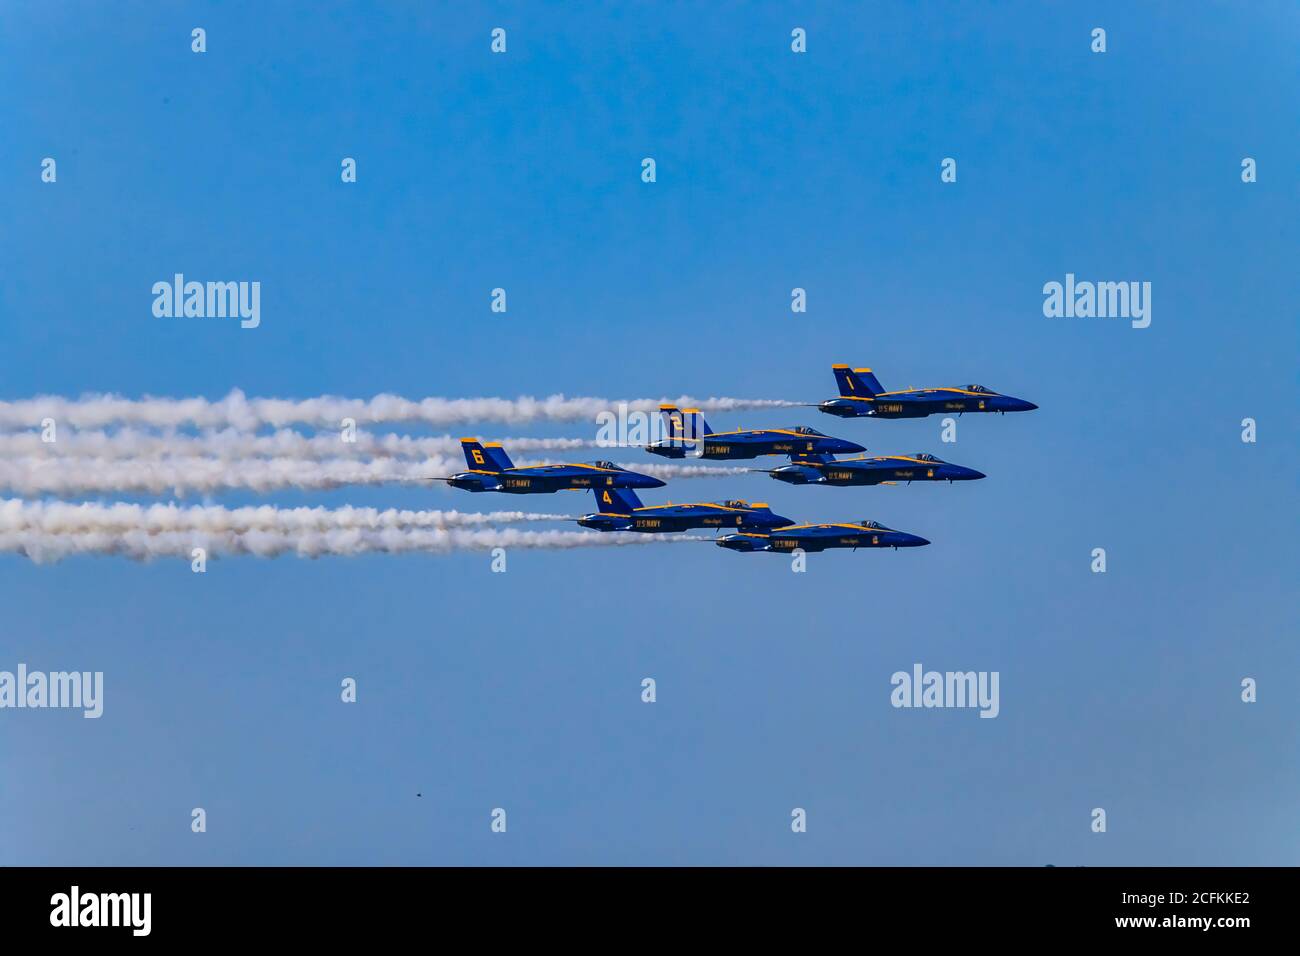 San Francisco, USA - 08 ottobre 2017: Aviogetti da combattimento della squadra aeronautica degli Stati Uniti Blue Angels F-18 Hornet in volo alla settimana della flotta Foto Stock